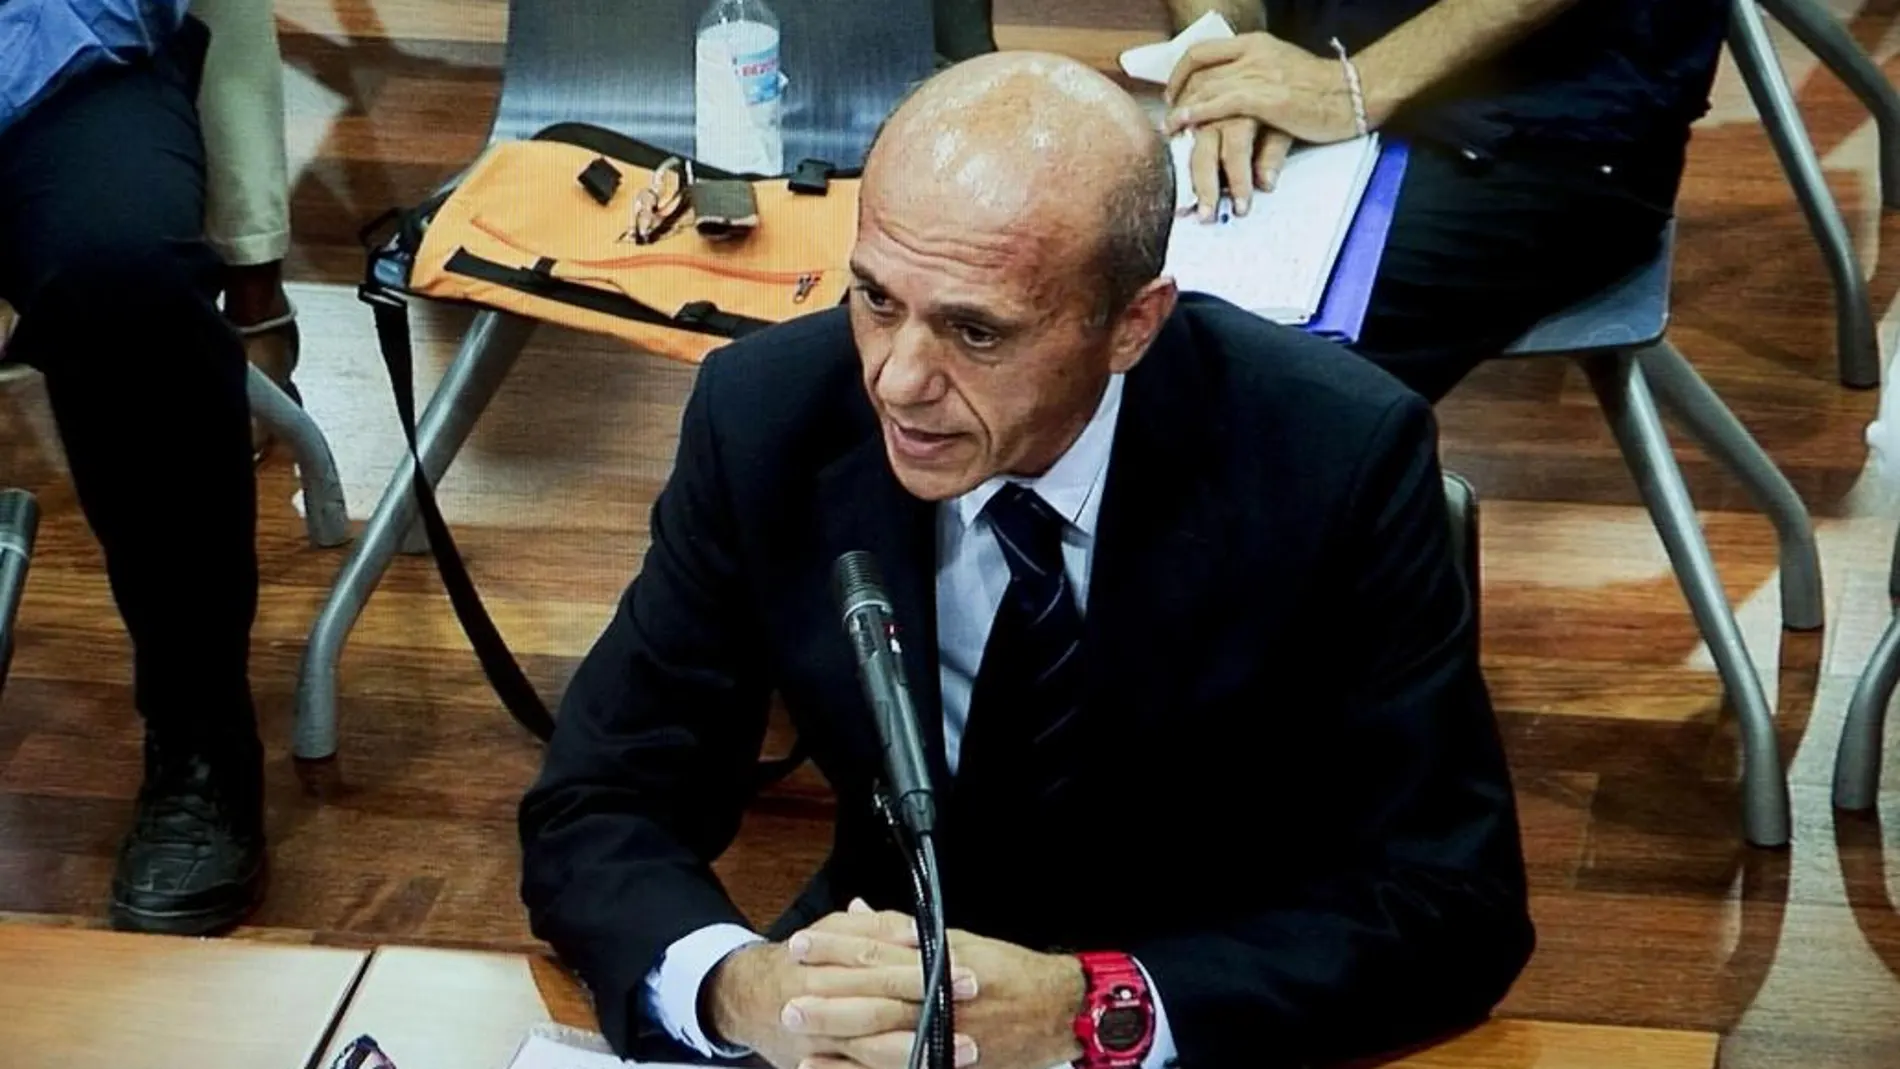 Fotografía tomada desde una de las pantallas de la sala de prensa de la Audiencia Provincial de Málaga, del abogado y expresidente del Sevilla FC José María del Nido durante su declaración